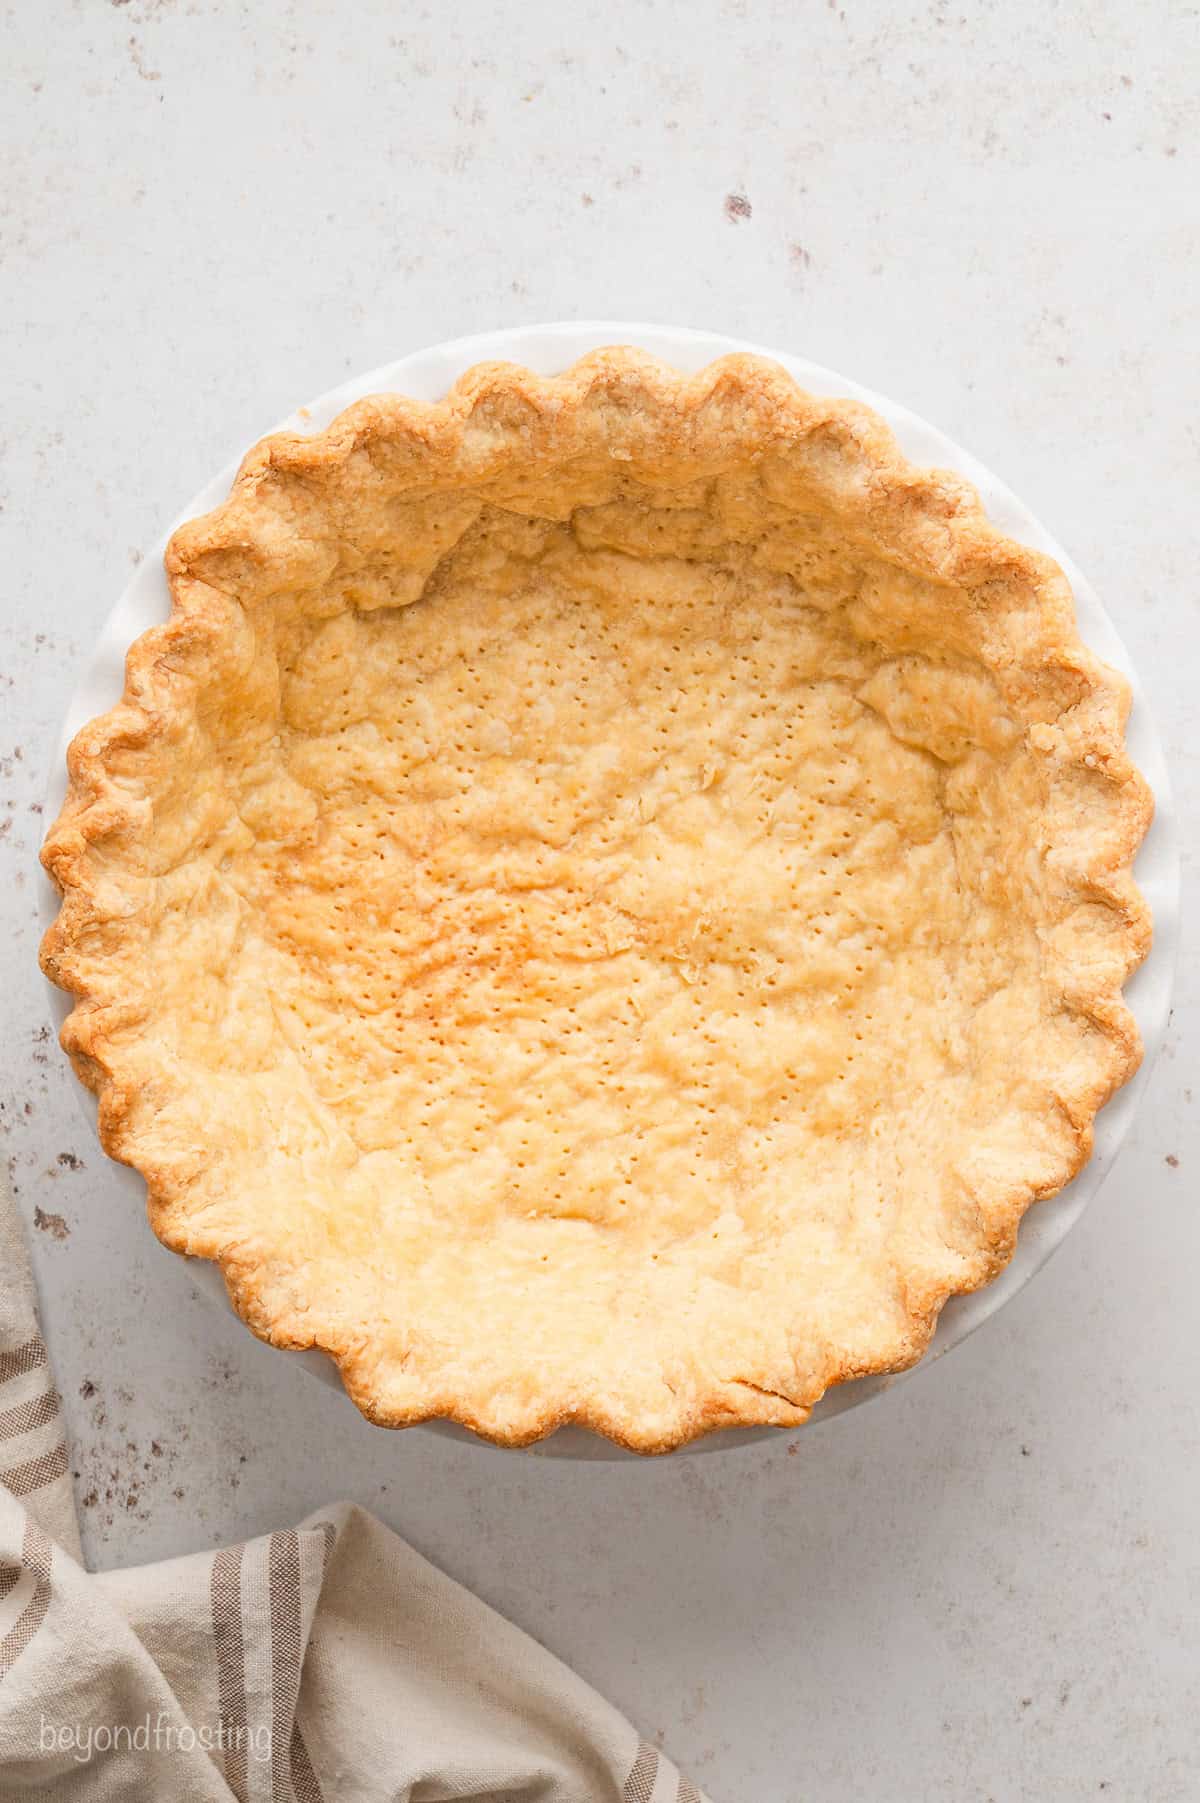 Par-baked pie crust in a pie plate.